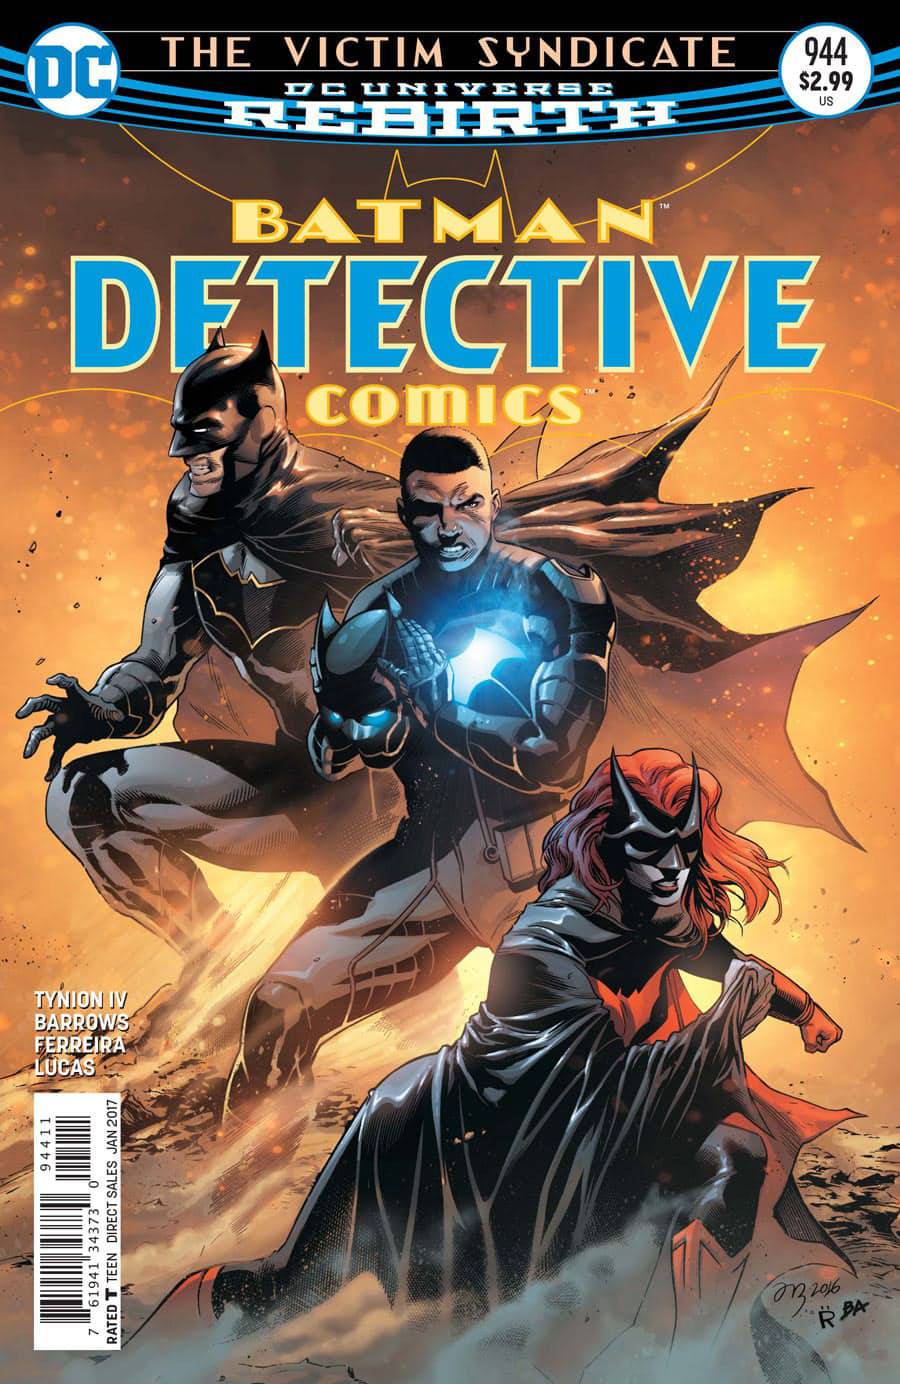 Detective Comics #944 (1937)